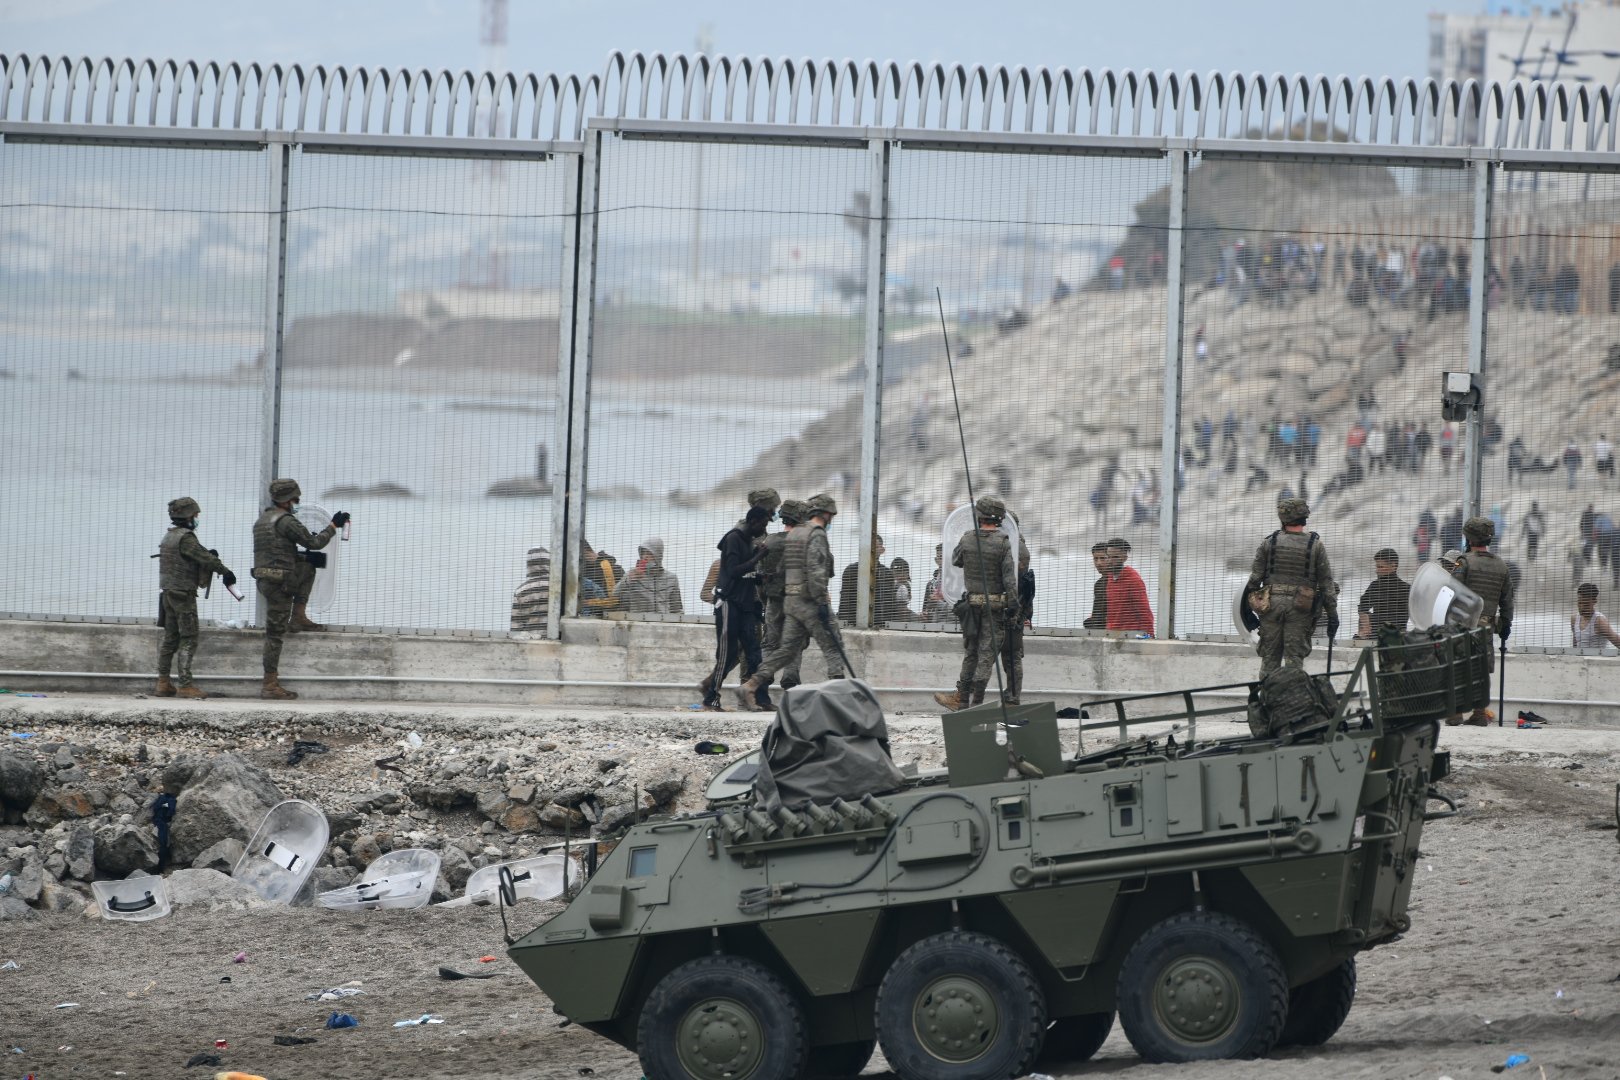 Sánchez militaritza Ceuta, expulsa milers de migrants i promet "fermesa"